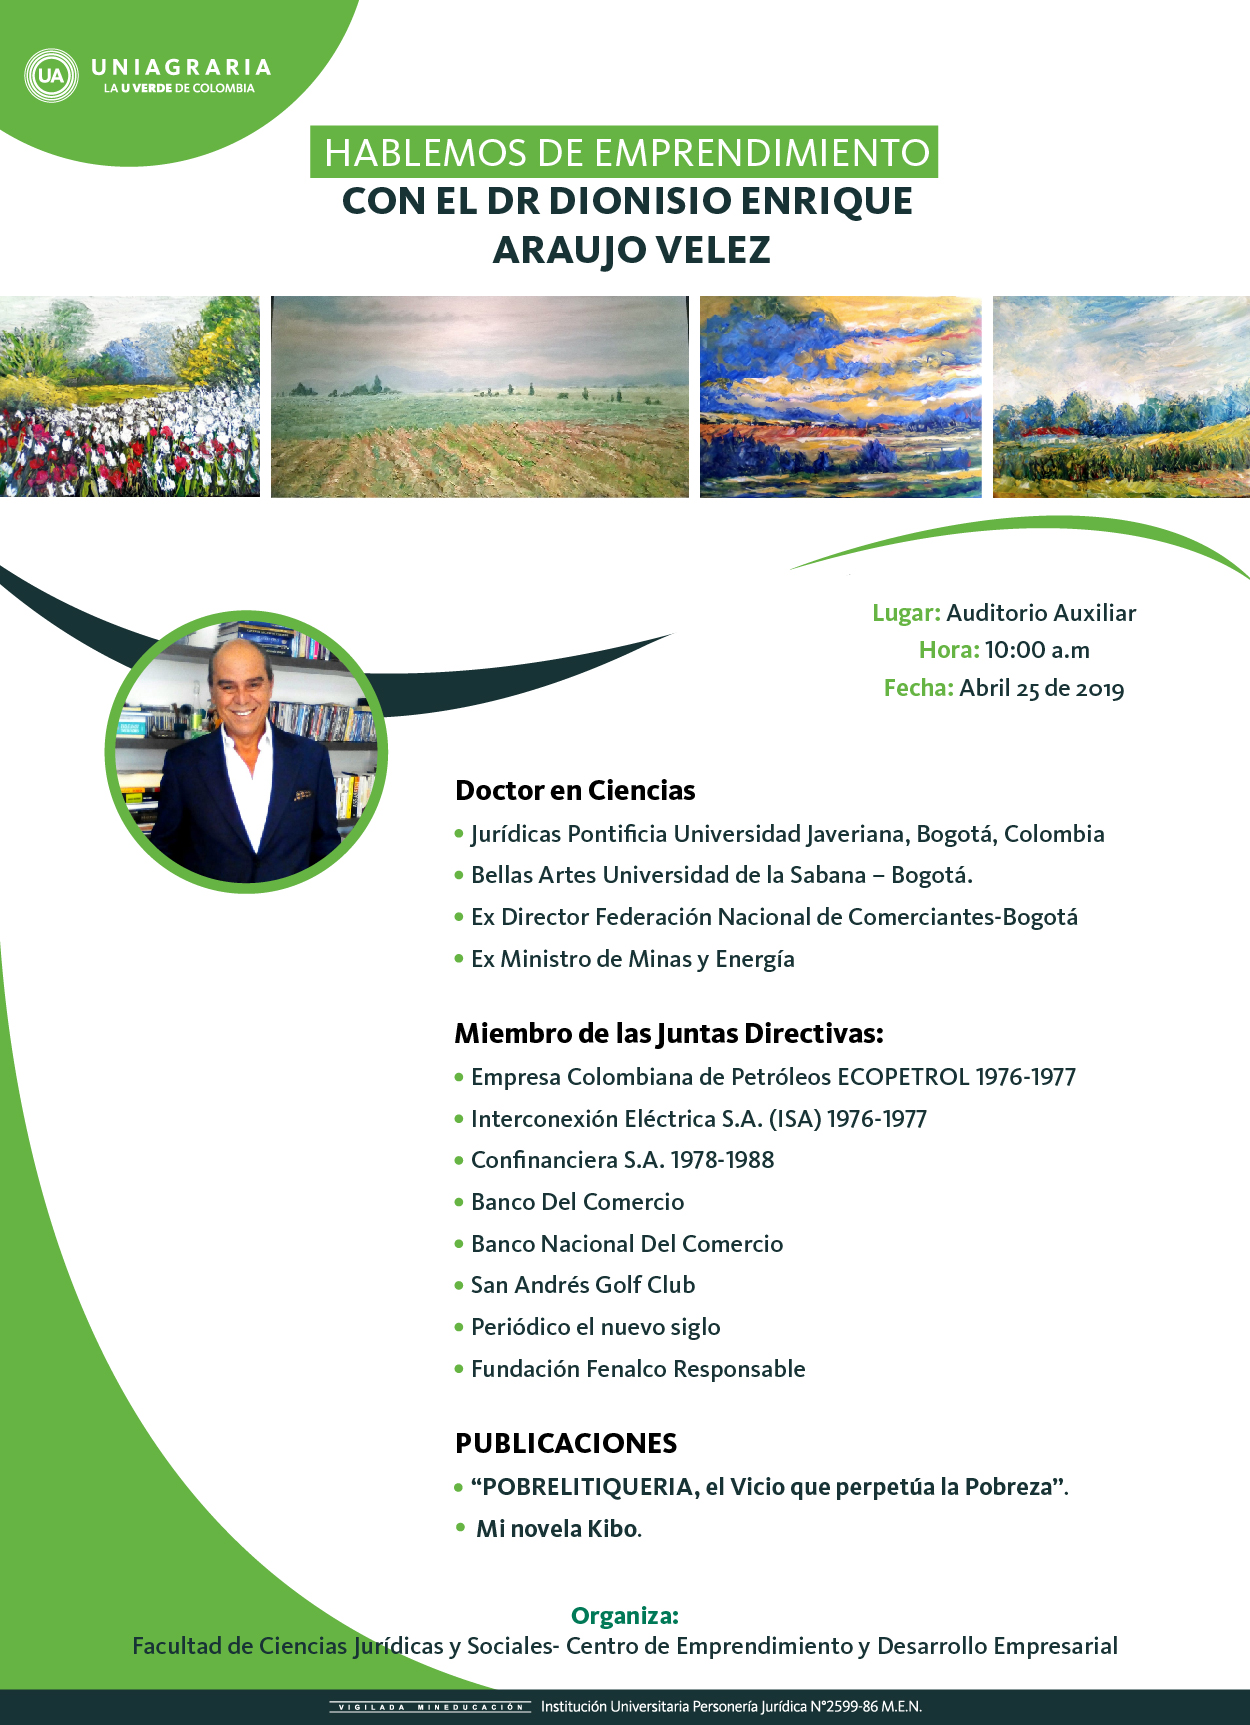 Hablemos de Emprendimiento con el Dr. Dionisio Enrique Araujo Velez